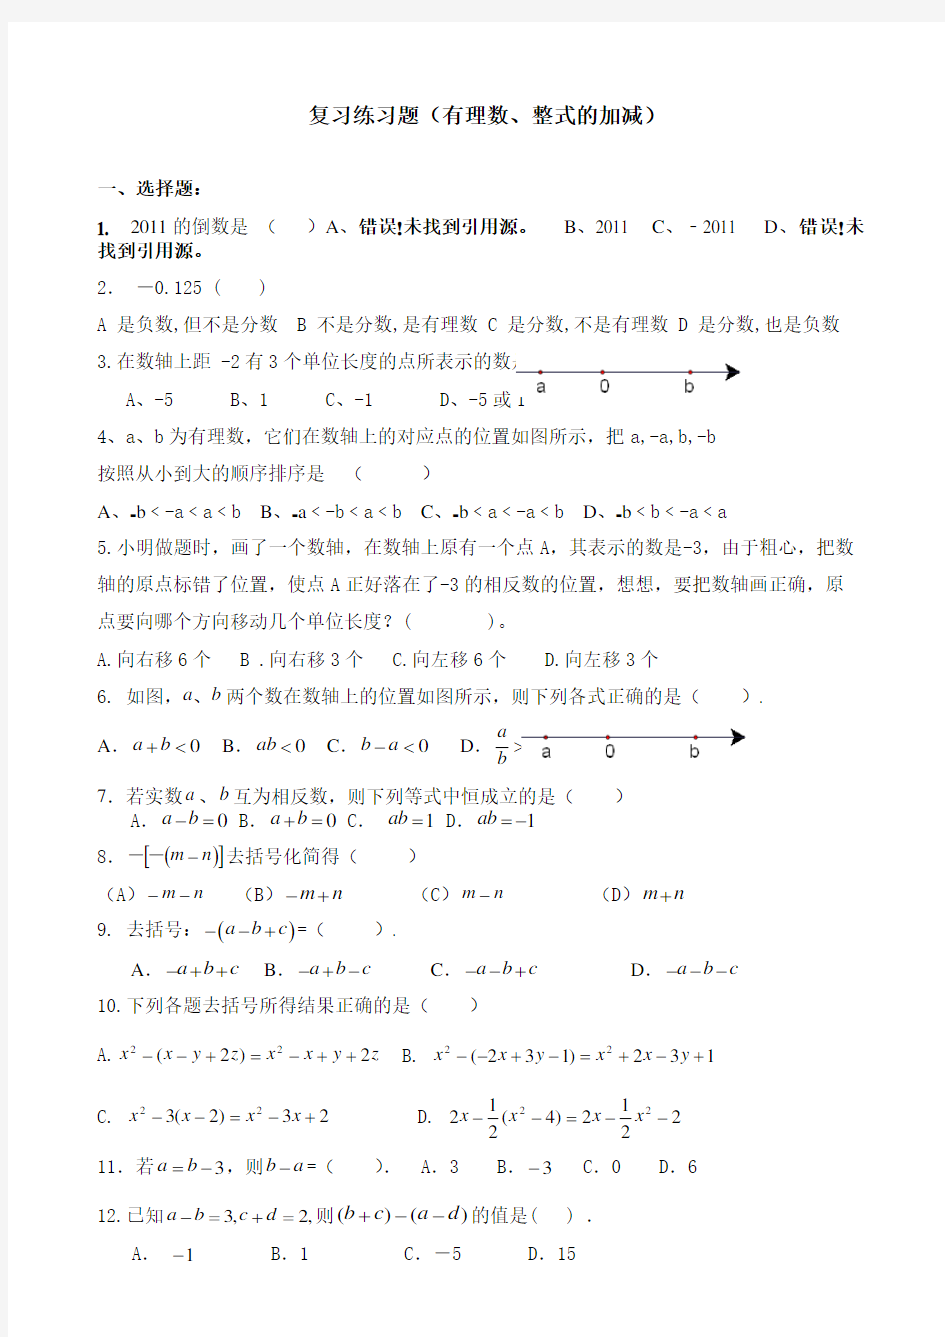 人教版数学七年级上册(已编辑可直接打印)有理数、整式加减复习题